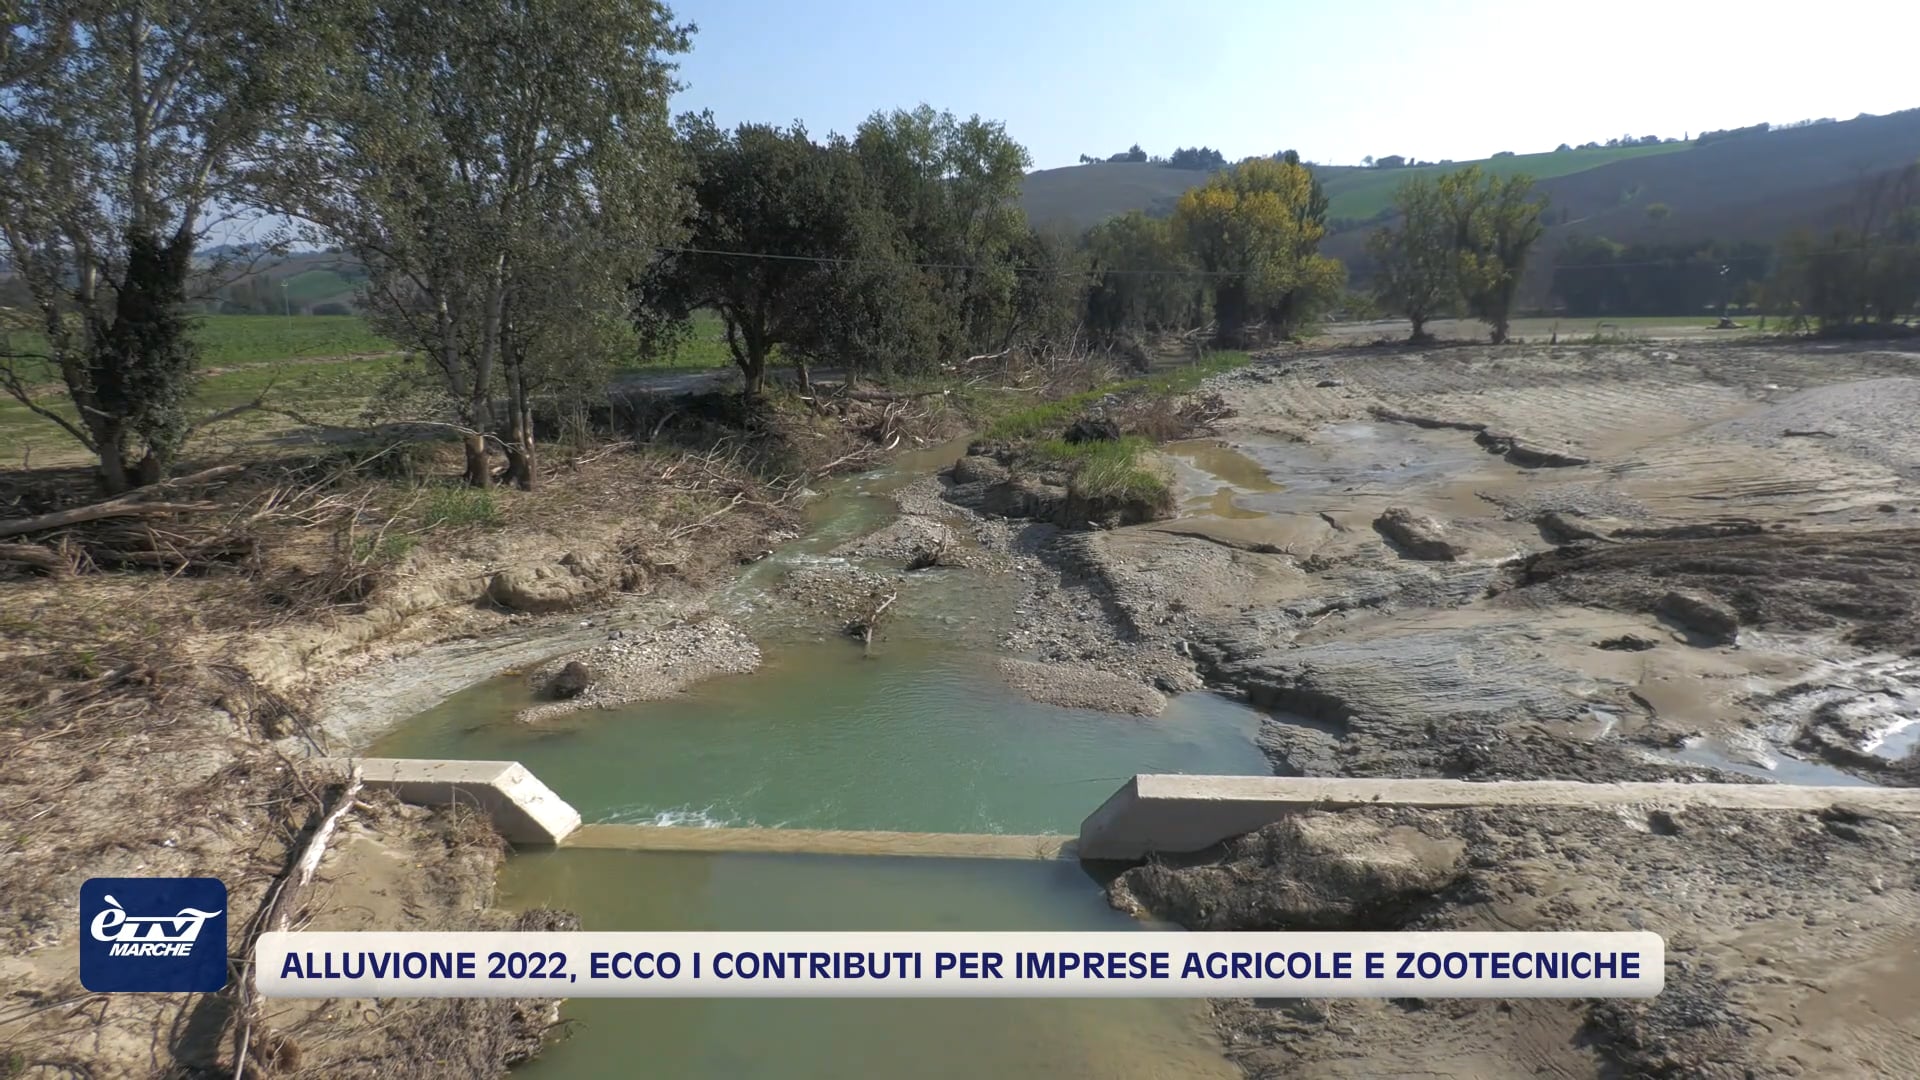 Alluvione 2022, ecco i contributi per le imprese agricole e zootecniche – VIDEO